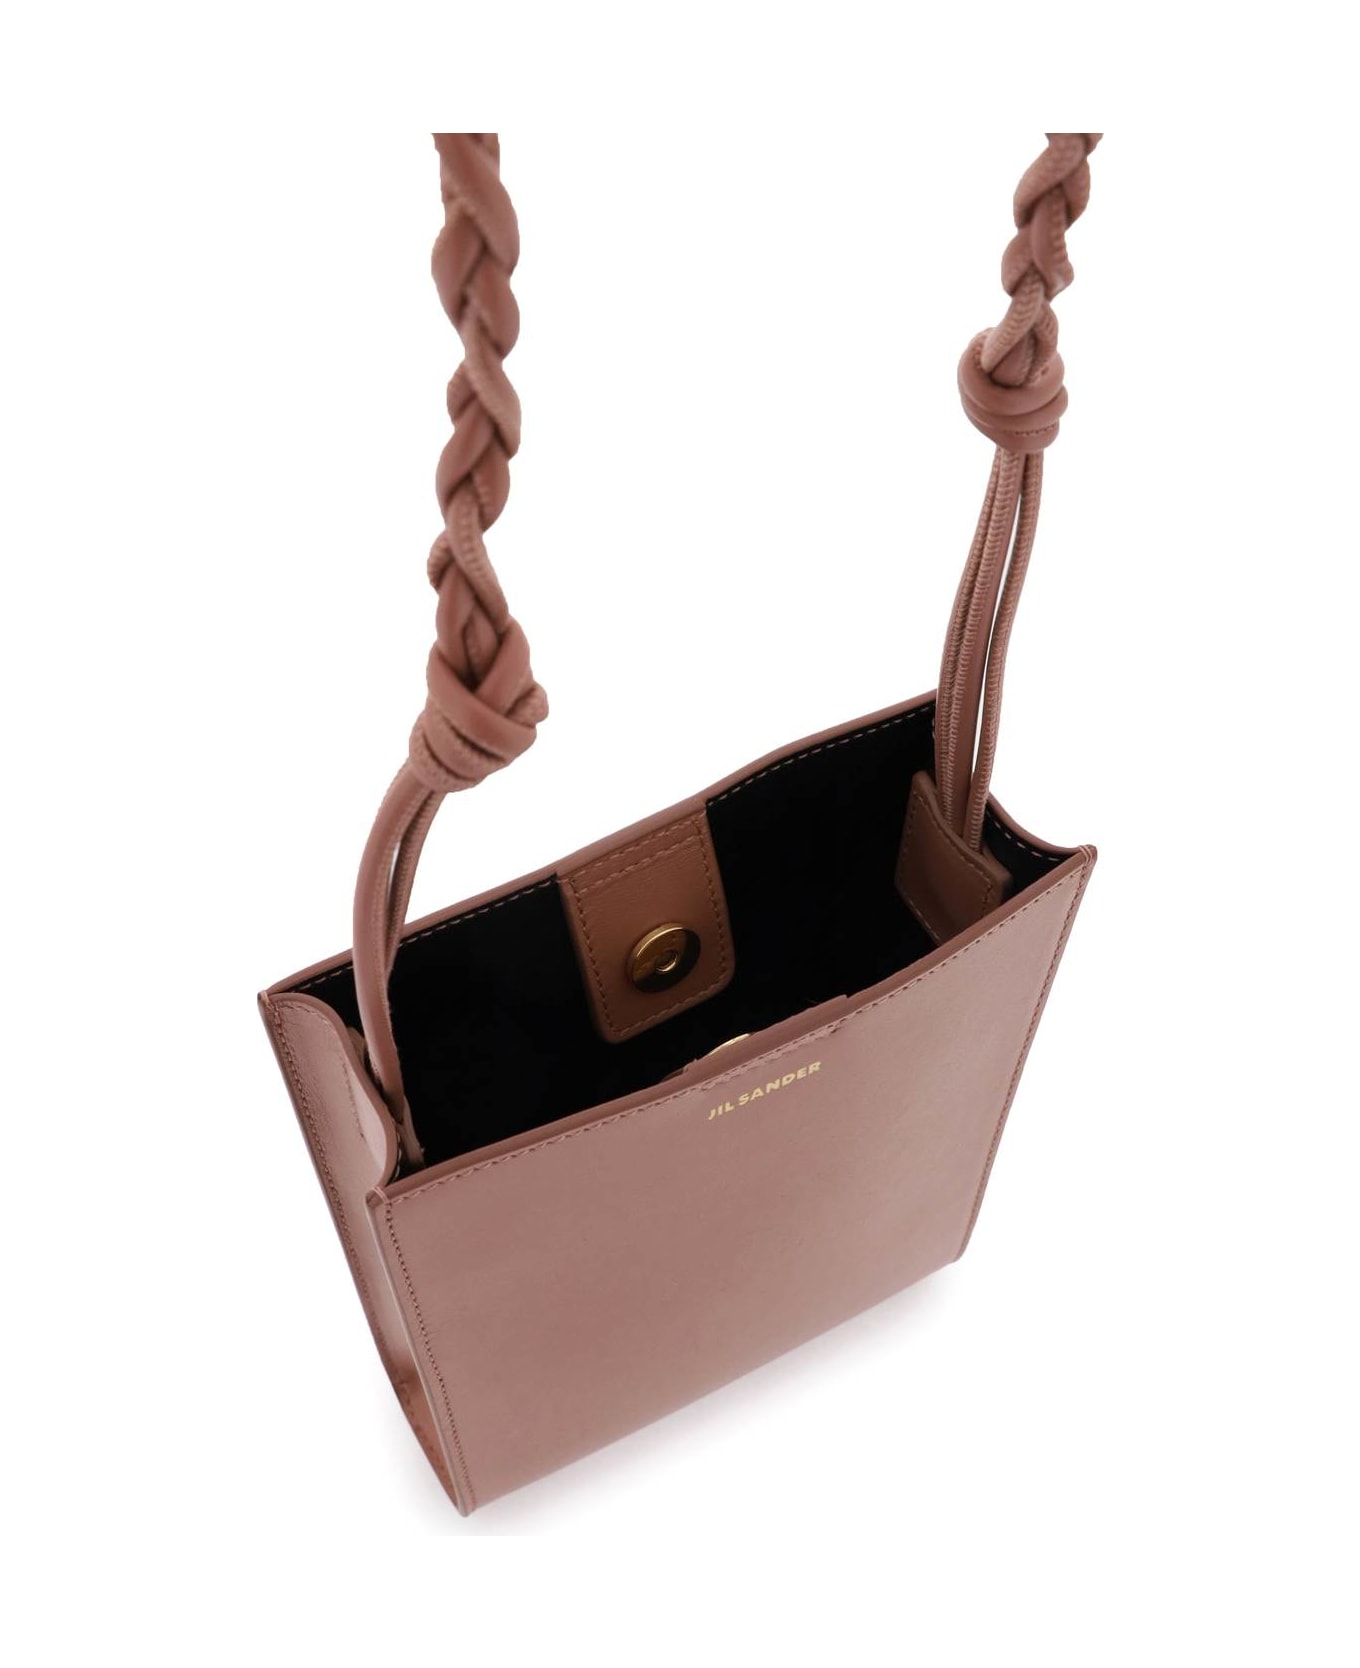 Jil Sander 'tangle' Small Crossbody Bag - brown